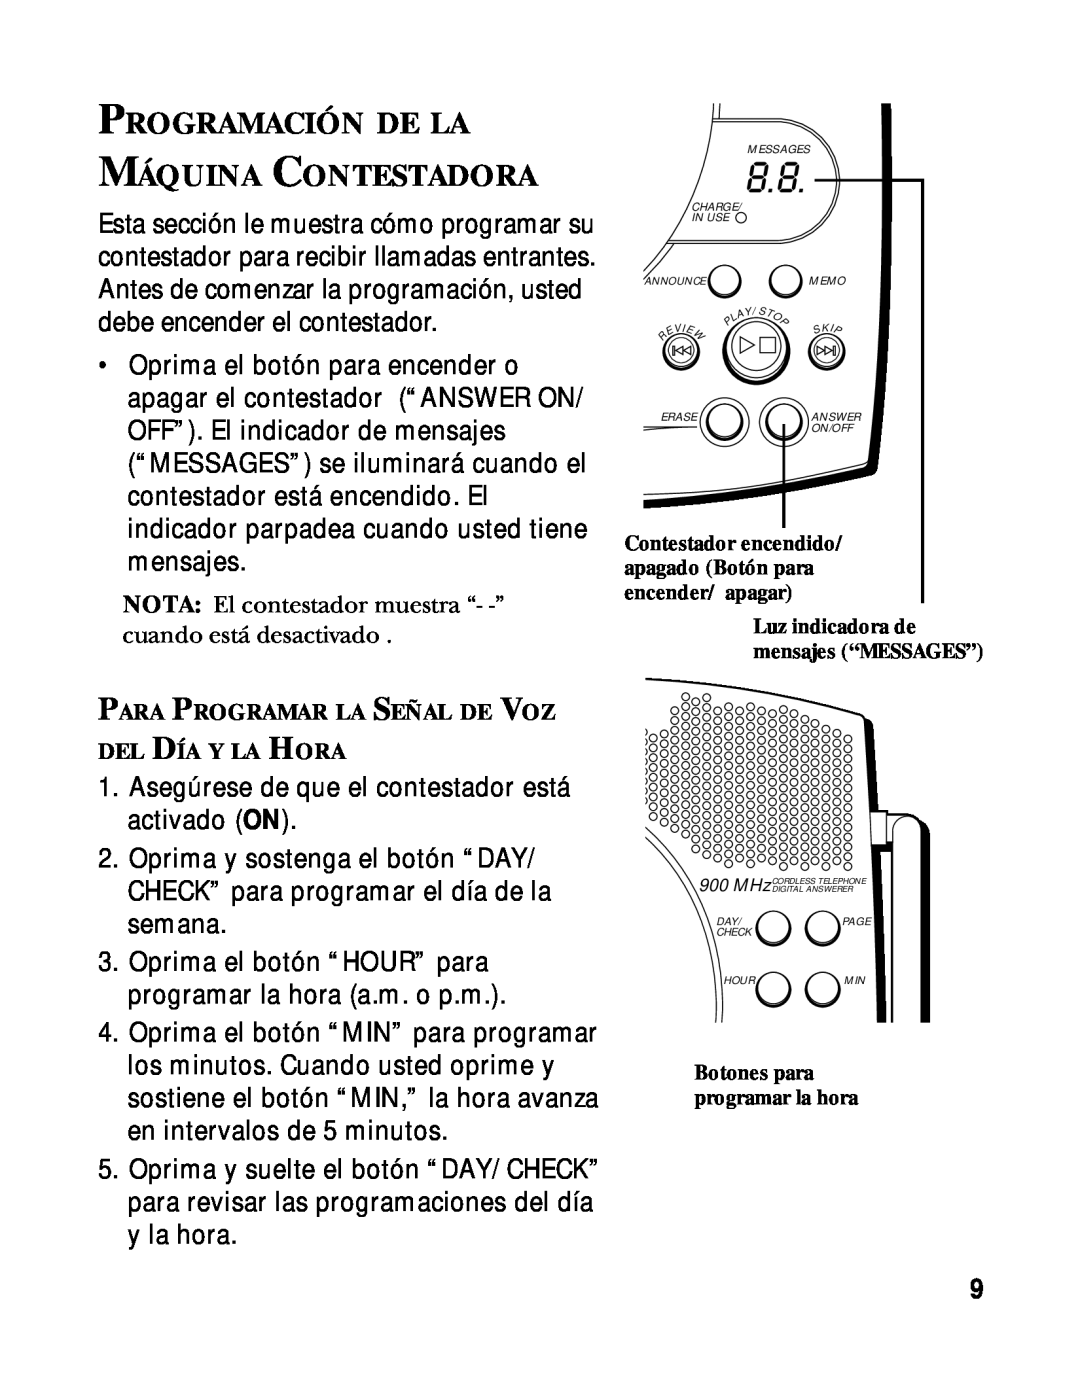 RCA 900 MHz manual Programación De La Máquina Contestadora, Para Programar La Señal De Voz Del Día Y La Hora 